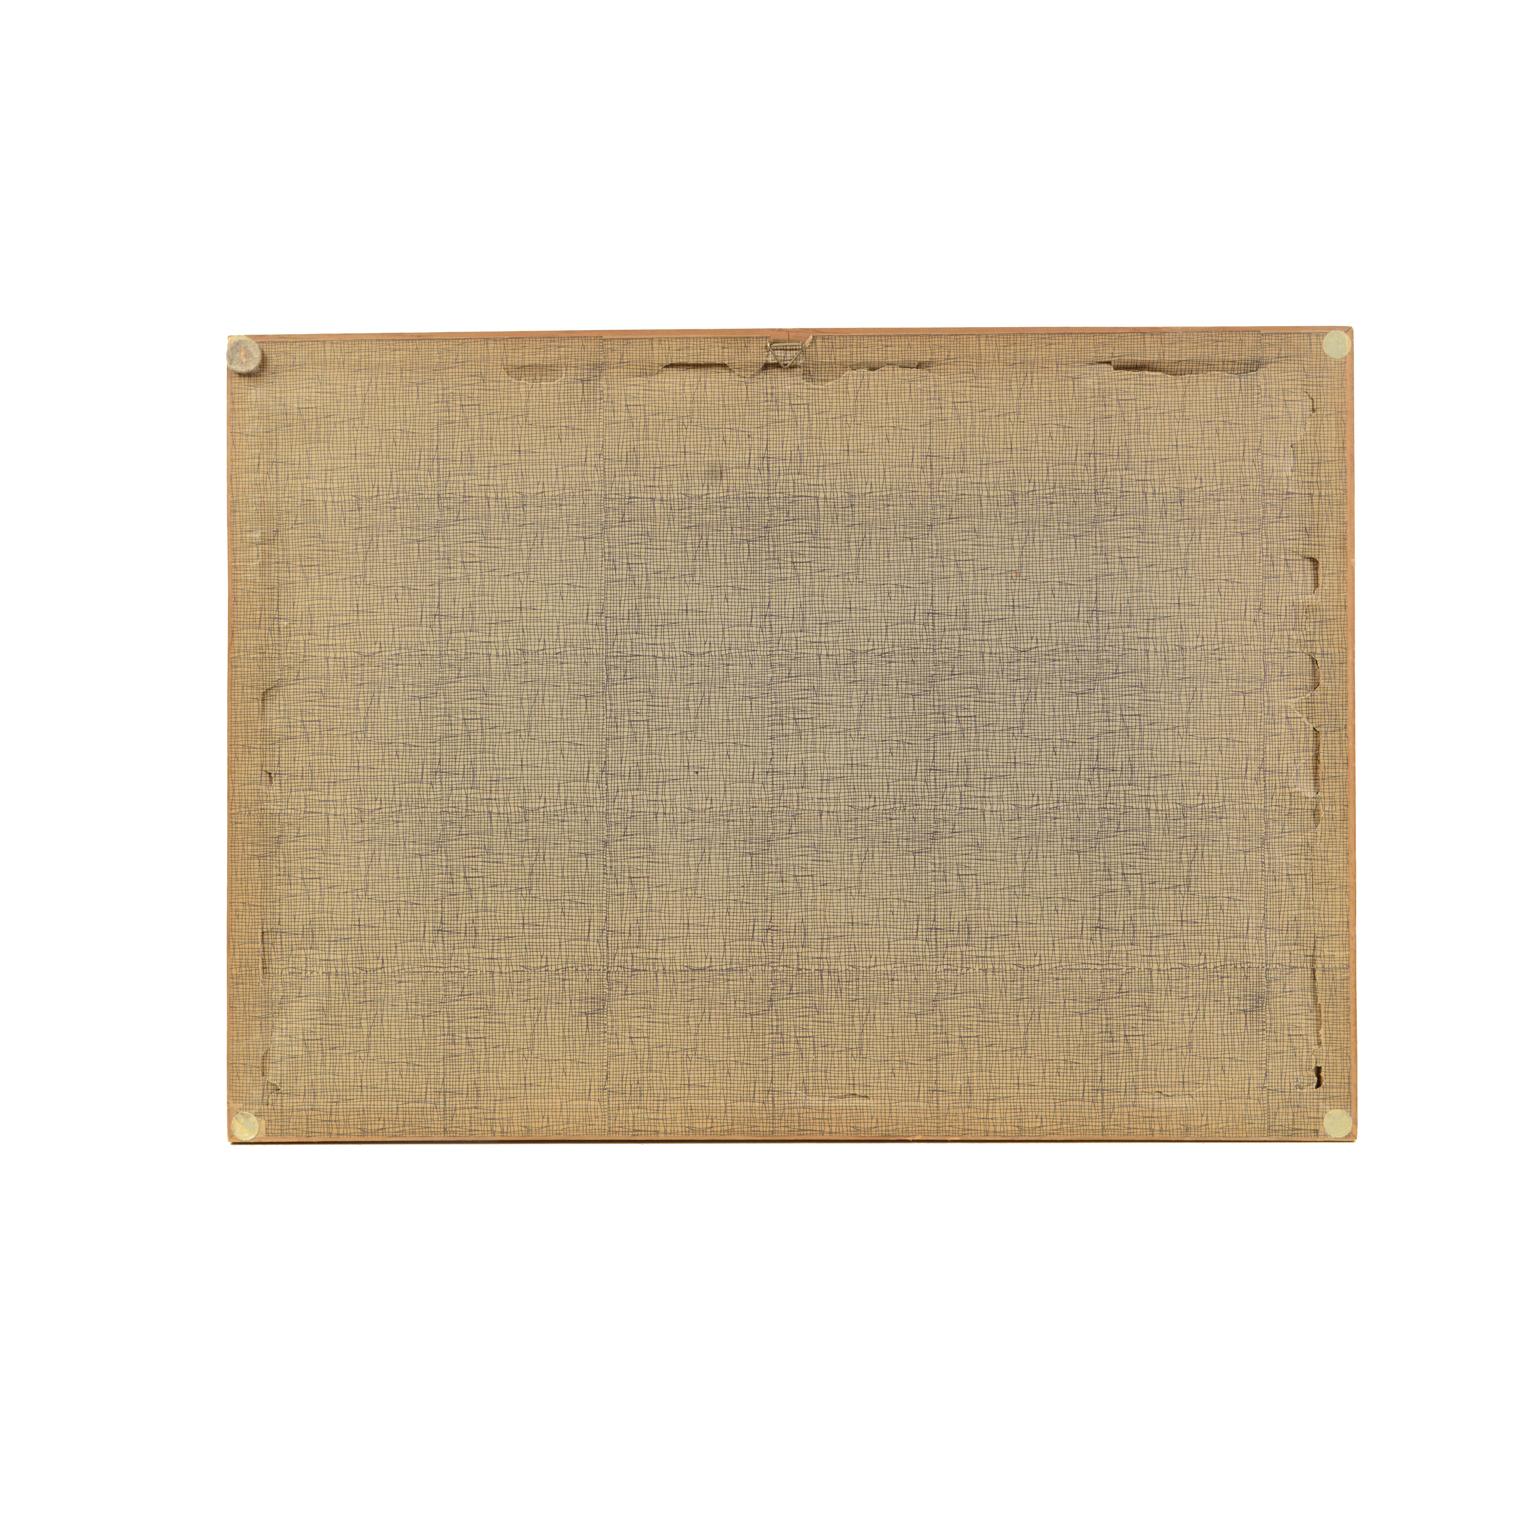 Lithographischer Druck der Schlacht am Kap Lèzard am 21. Oktober 1707, aus dem Buch Historische Galerie von Versailles. Skelton ist der Graveur. Originaldruck von Victor Gilbert Théodore Gudin (1802-1880). Französische Herstellung, Anfang 1900.